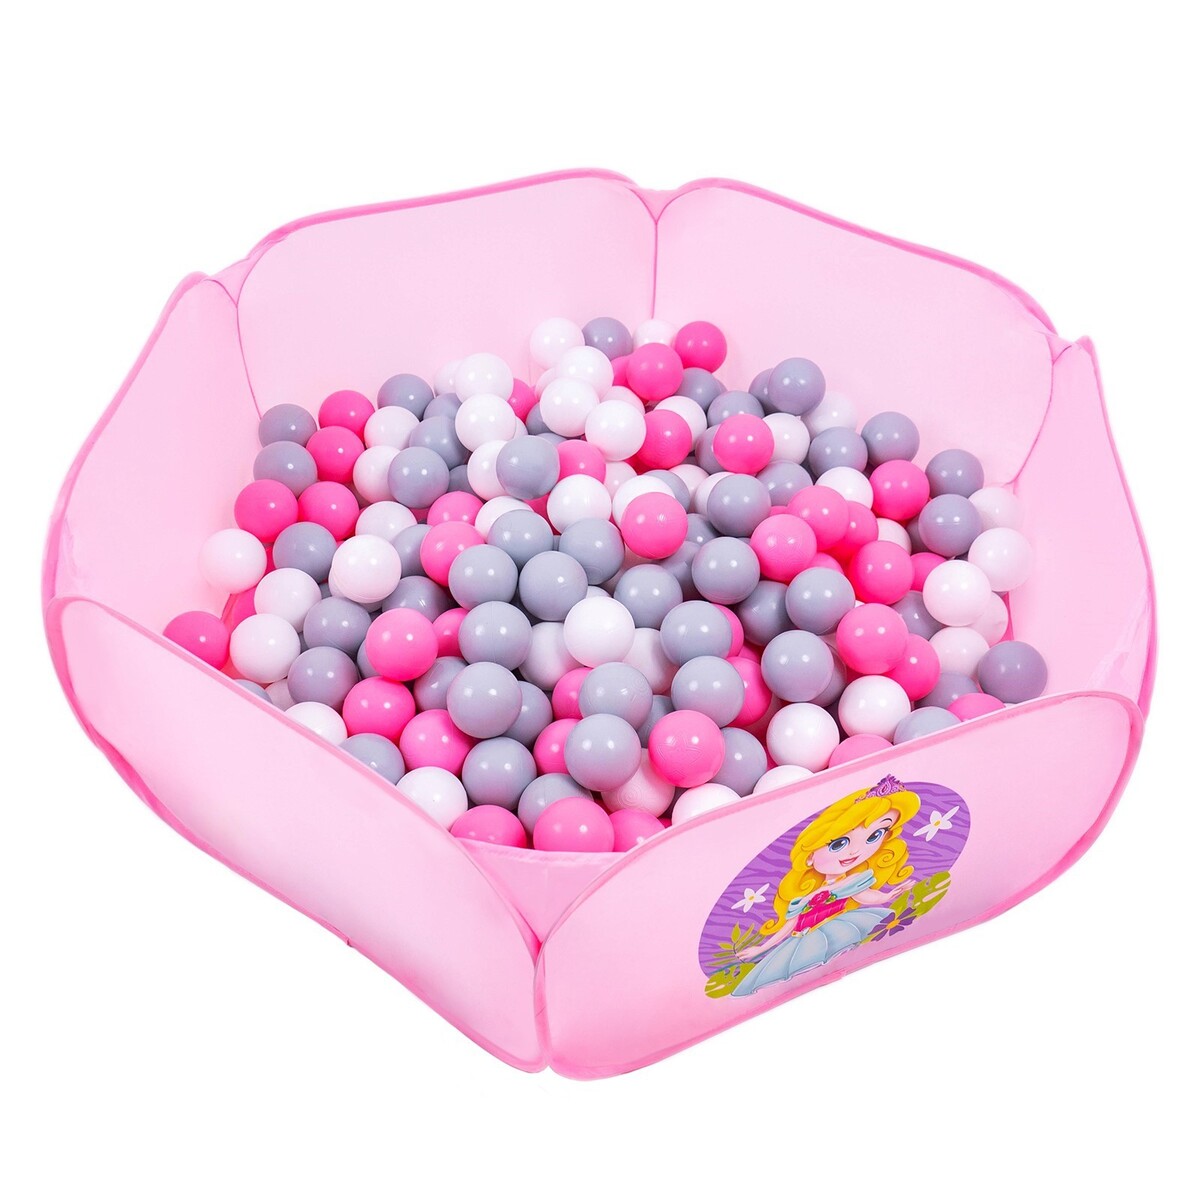 Шарики для сухого бассейна с рисунком, диаметр шара 7,5 см, набор 60 штук, цвет розовый, белый, серый шары для сухого бассейна 50шт 8см